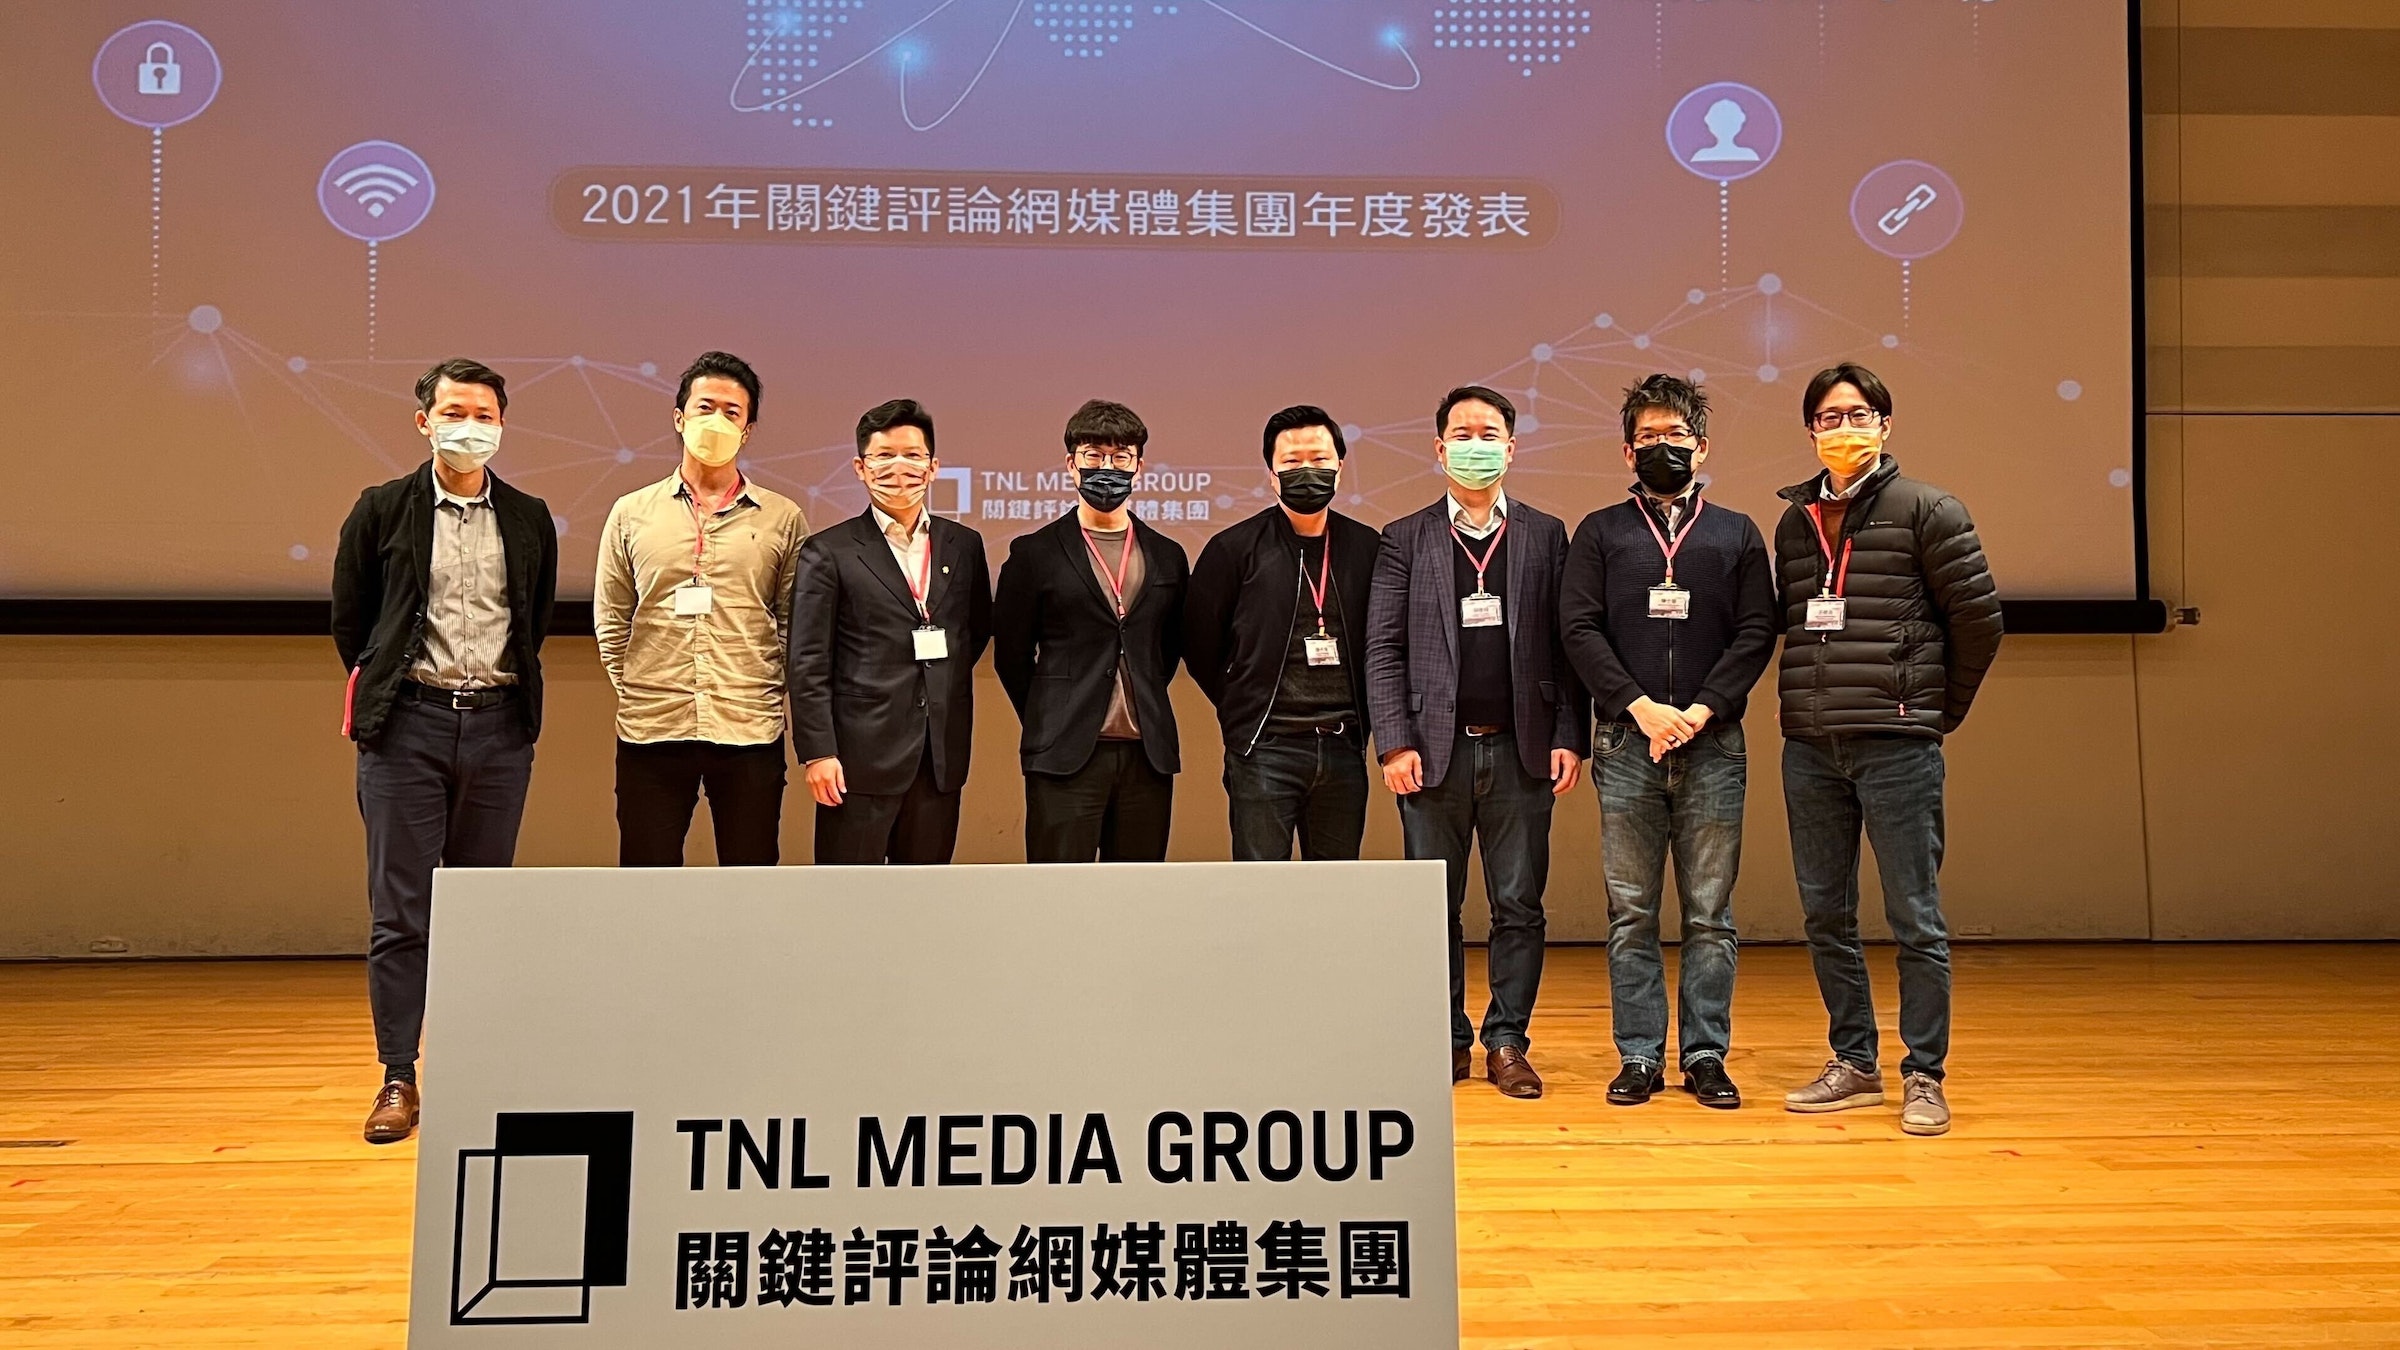 照片中提到了2021年關鍵評論網媒體集團年度發表、C-3、TNL ME ROUP，包含了社交群、公共關係、學術會議、社交群、球隊